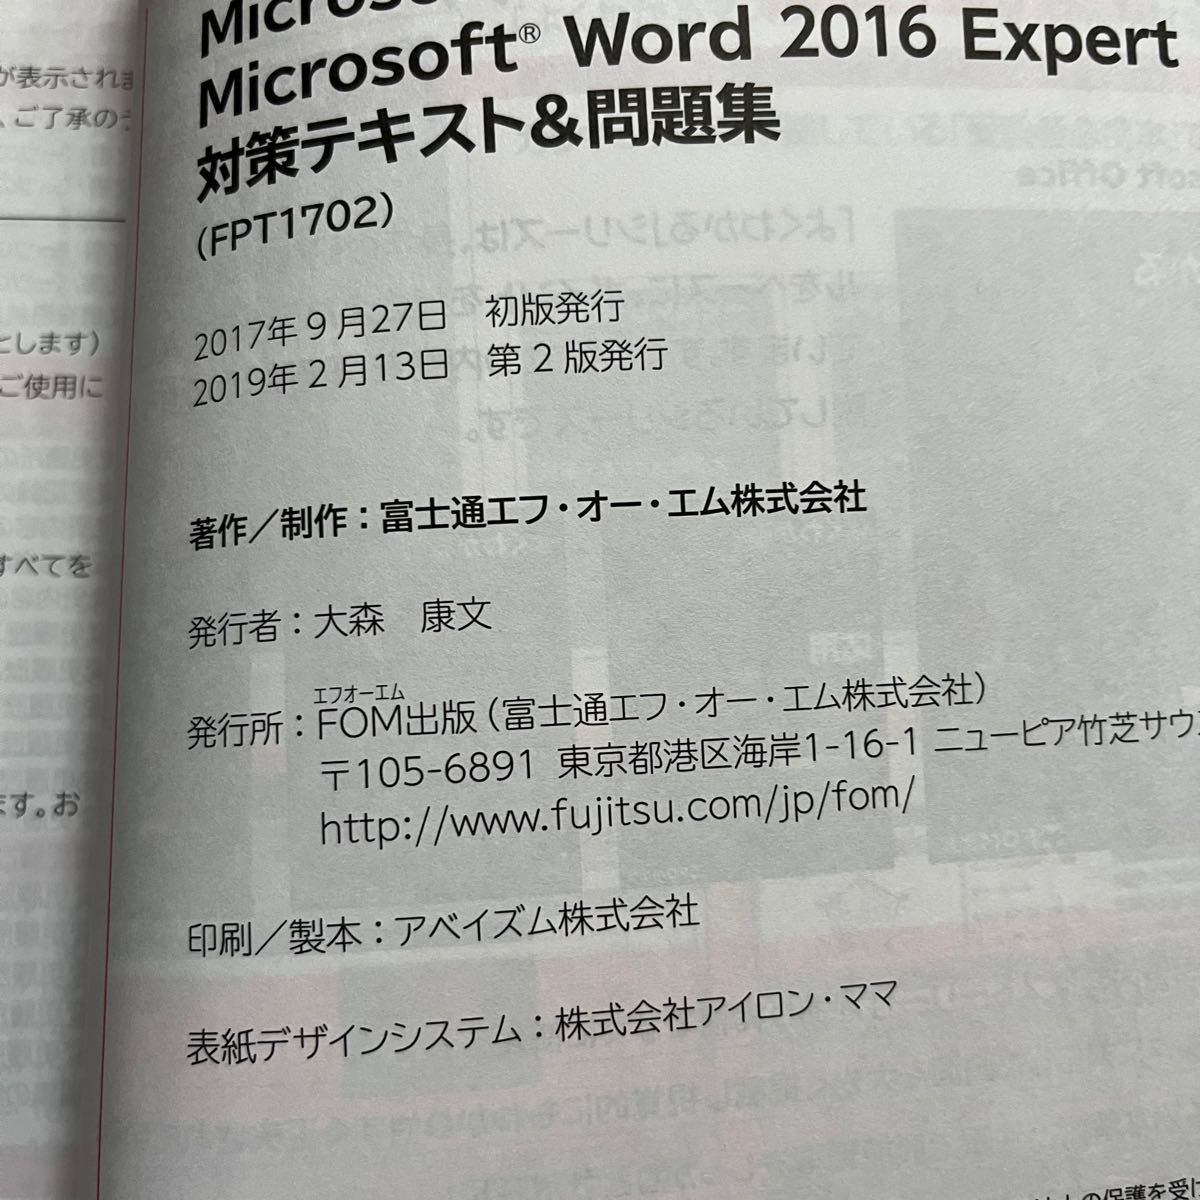 MOS Word 2016 Expert 対策テキスト&問題集 (よくわかるマスター)